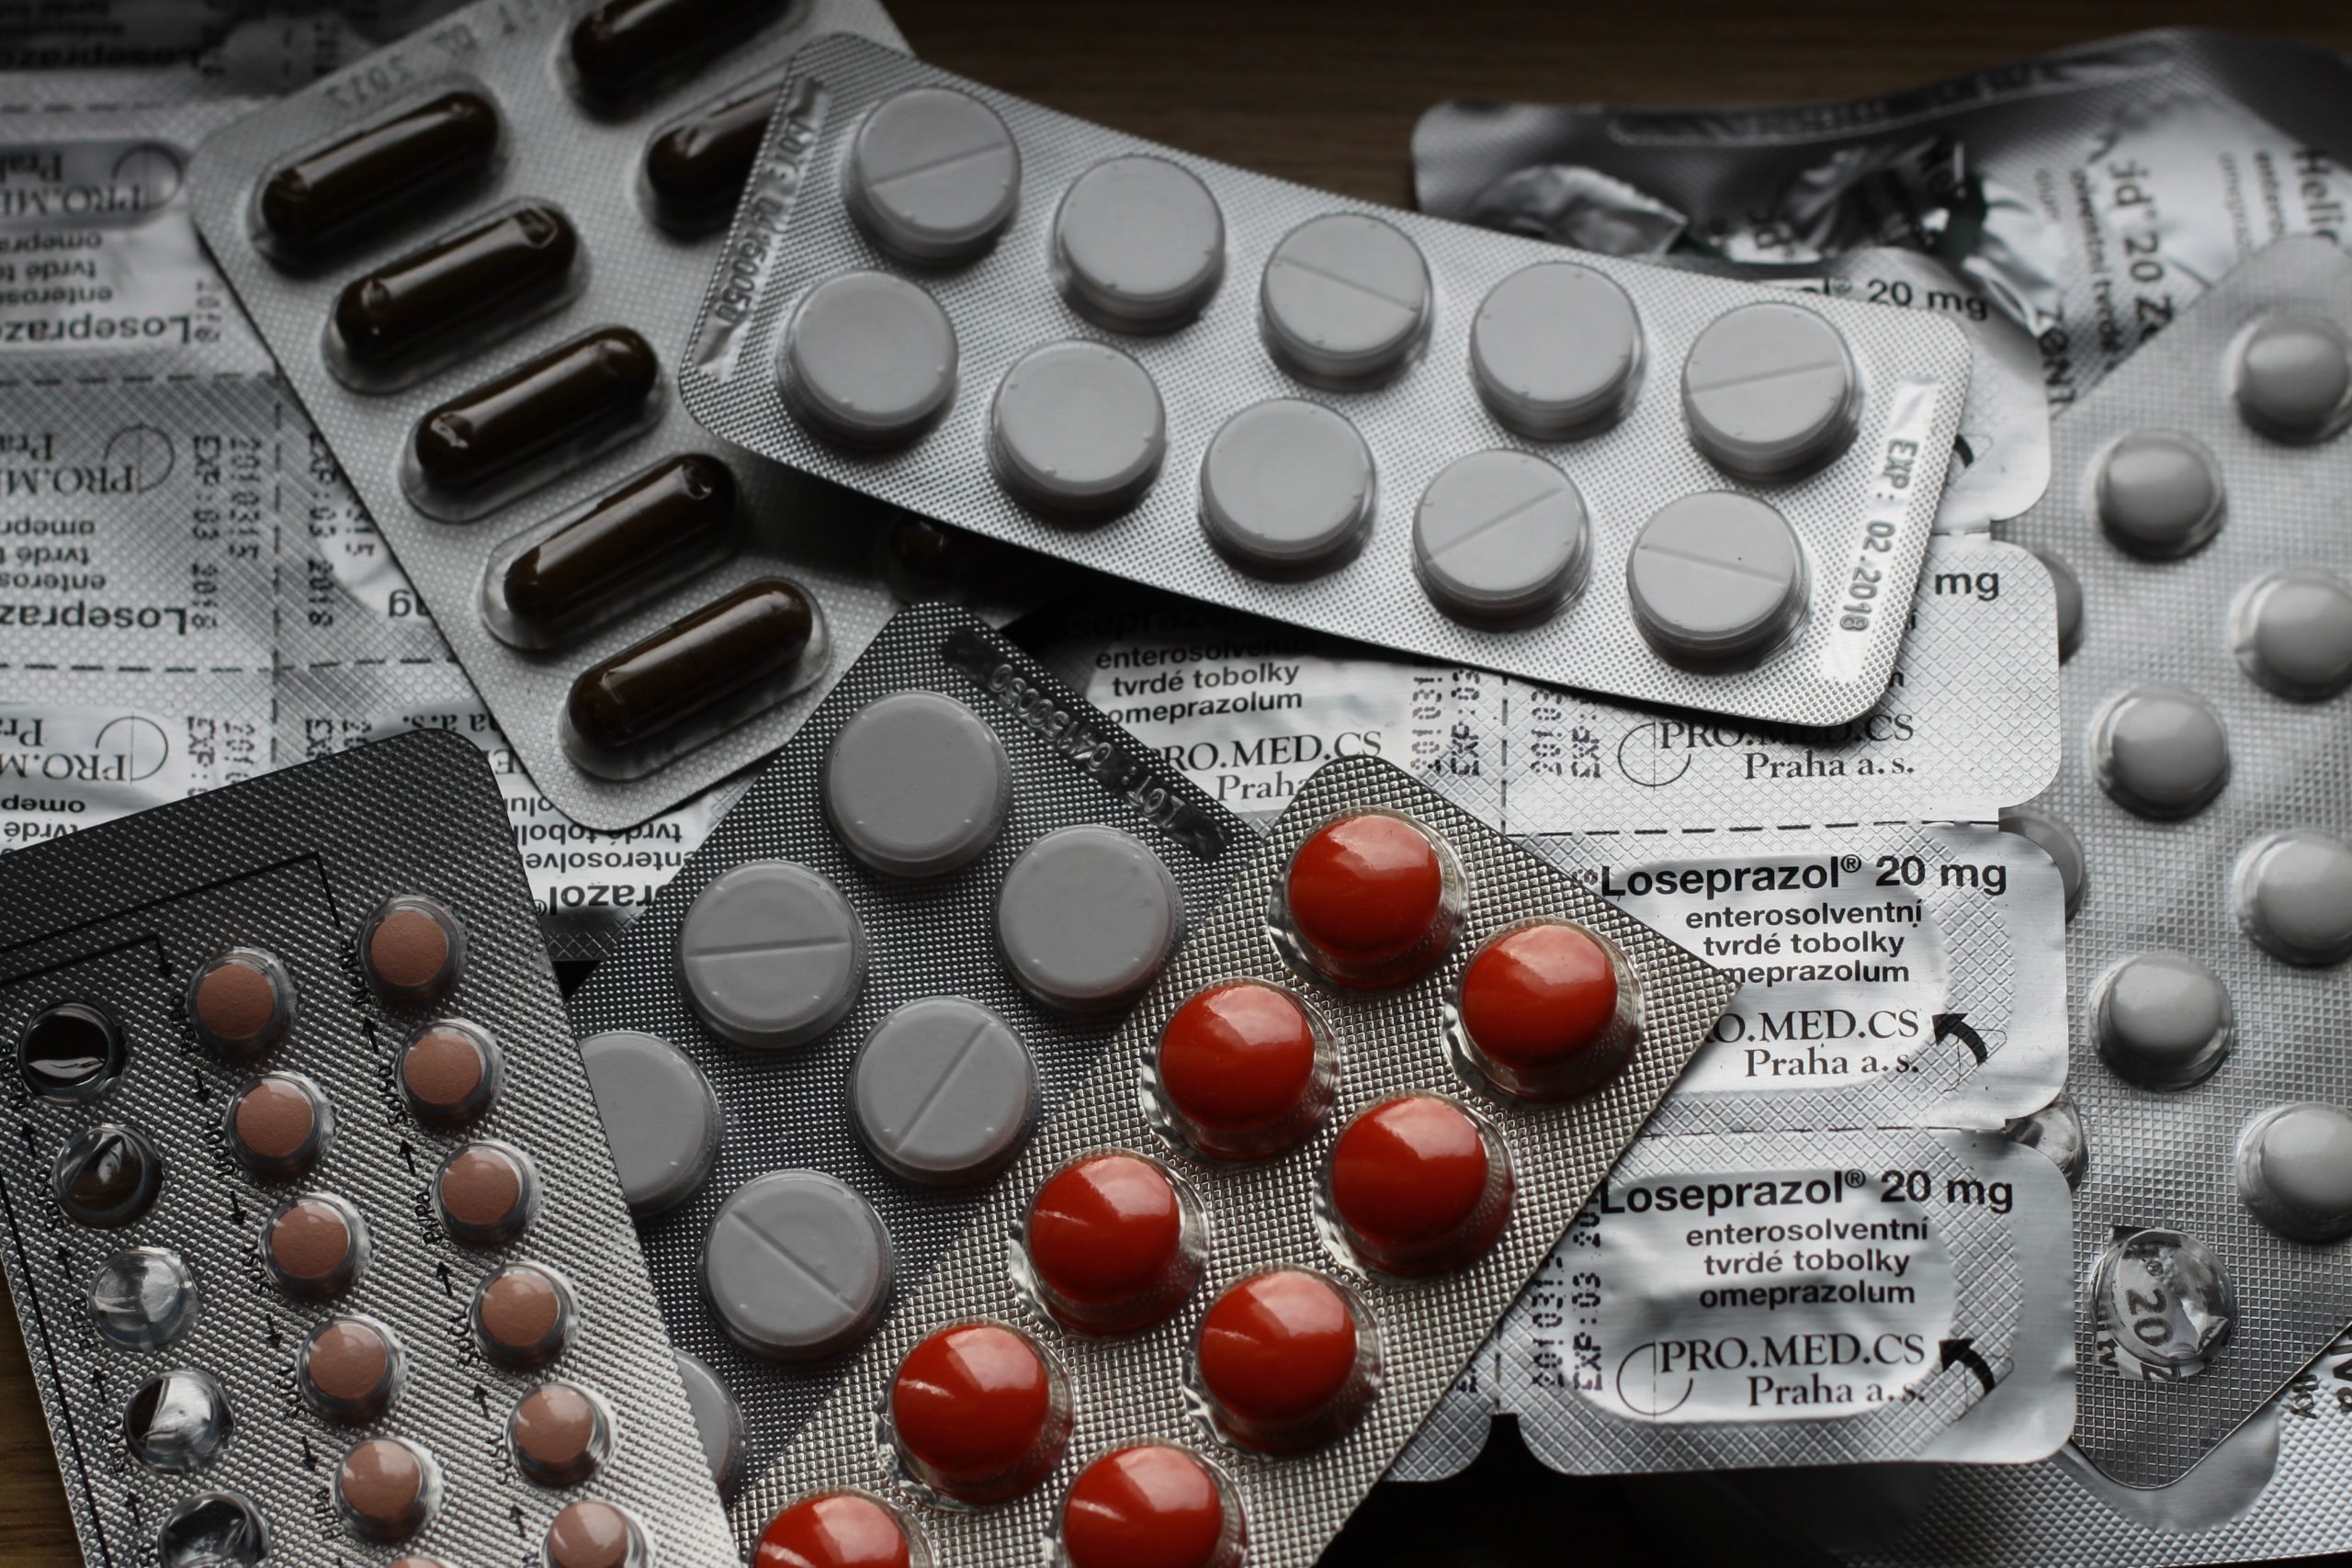 Los medicamentos antipsicóticos pueden tener efectos secundarios en pacientes que los toman por un período prolongado. Foto: Pixabay.